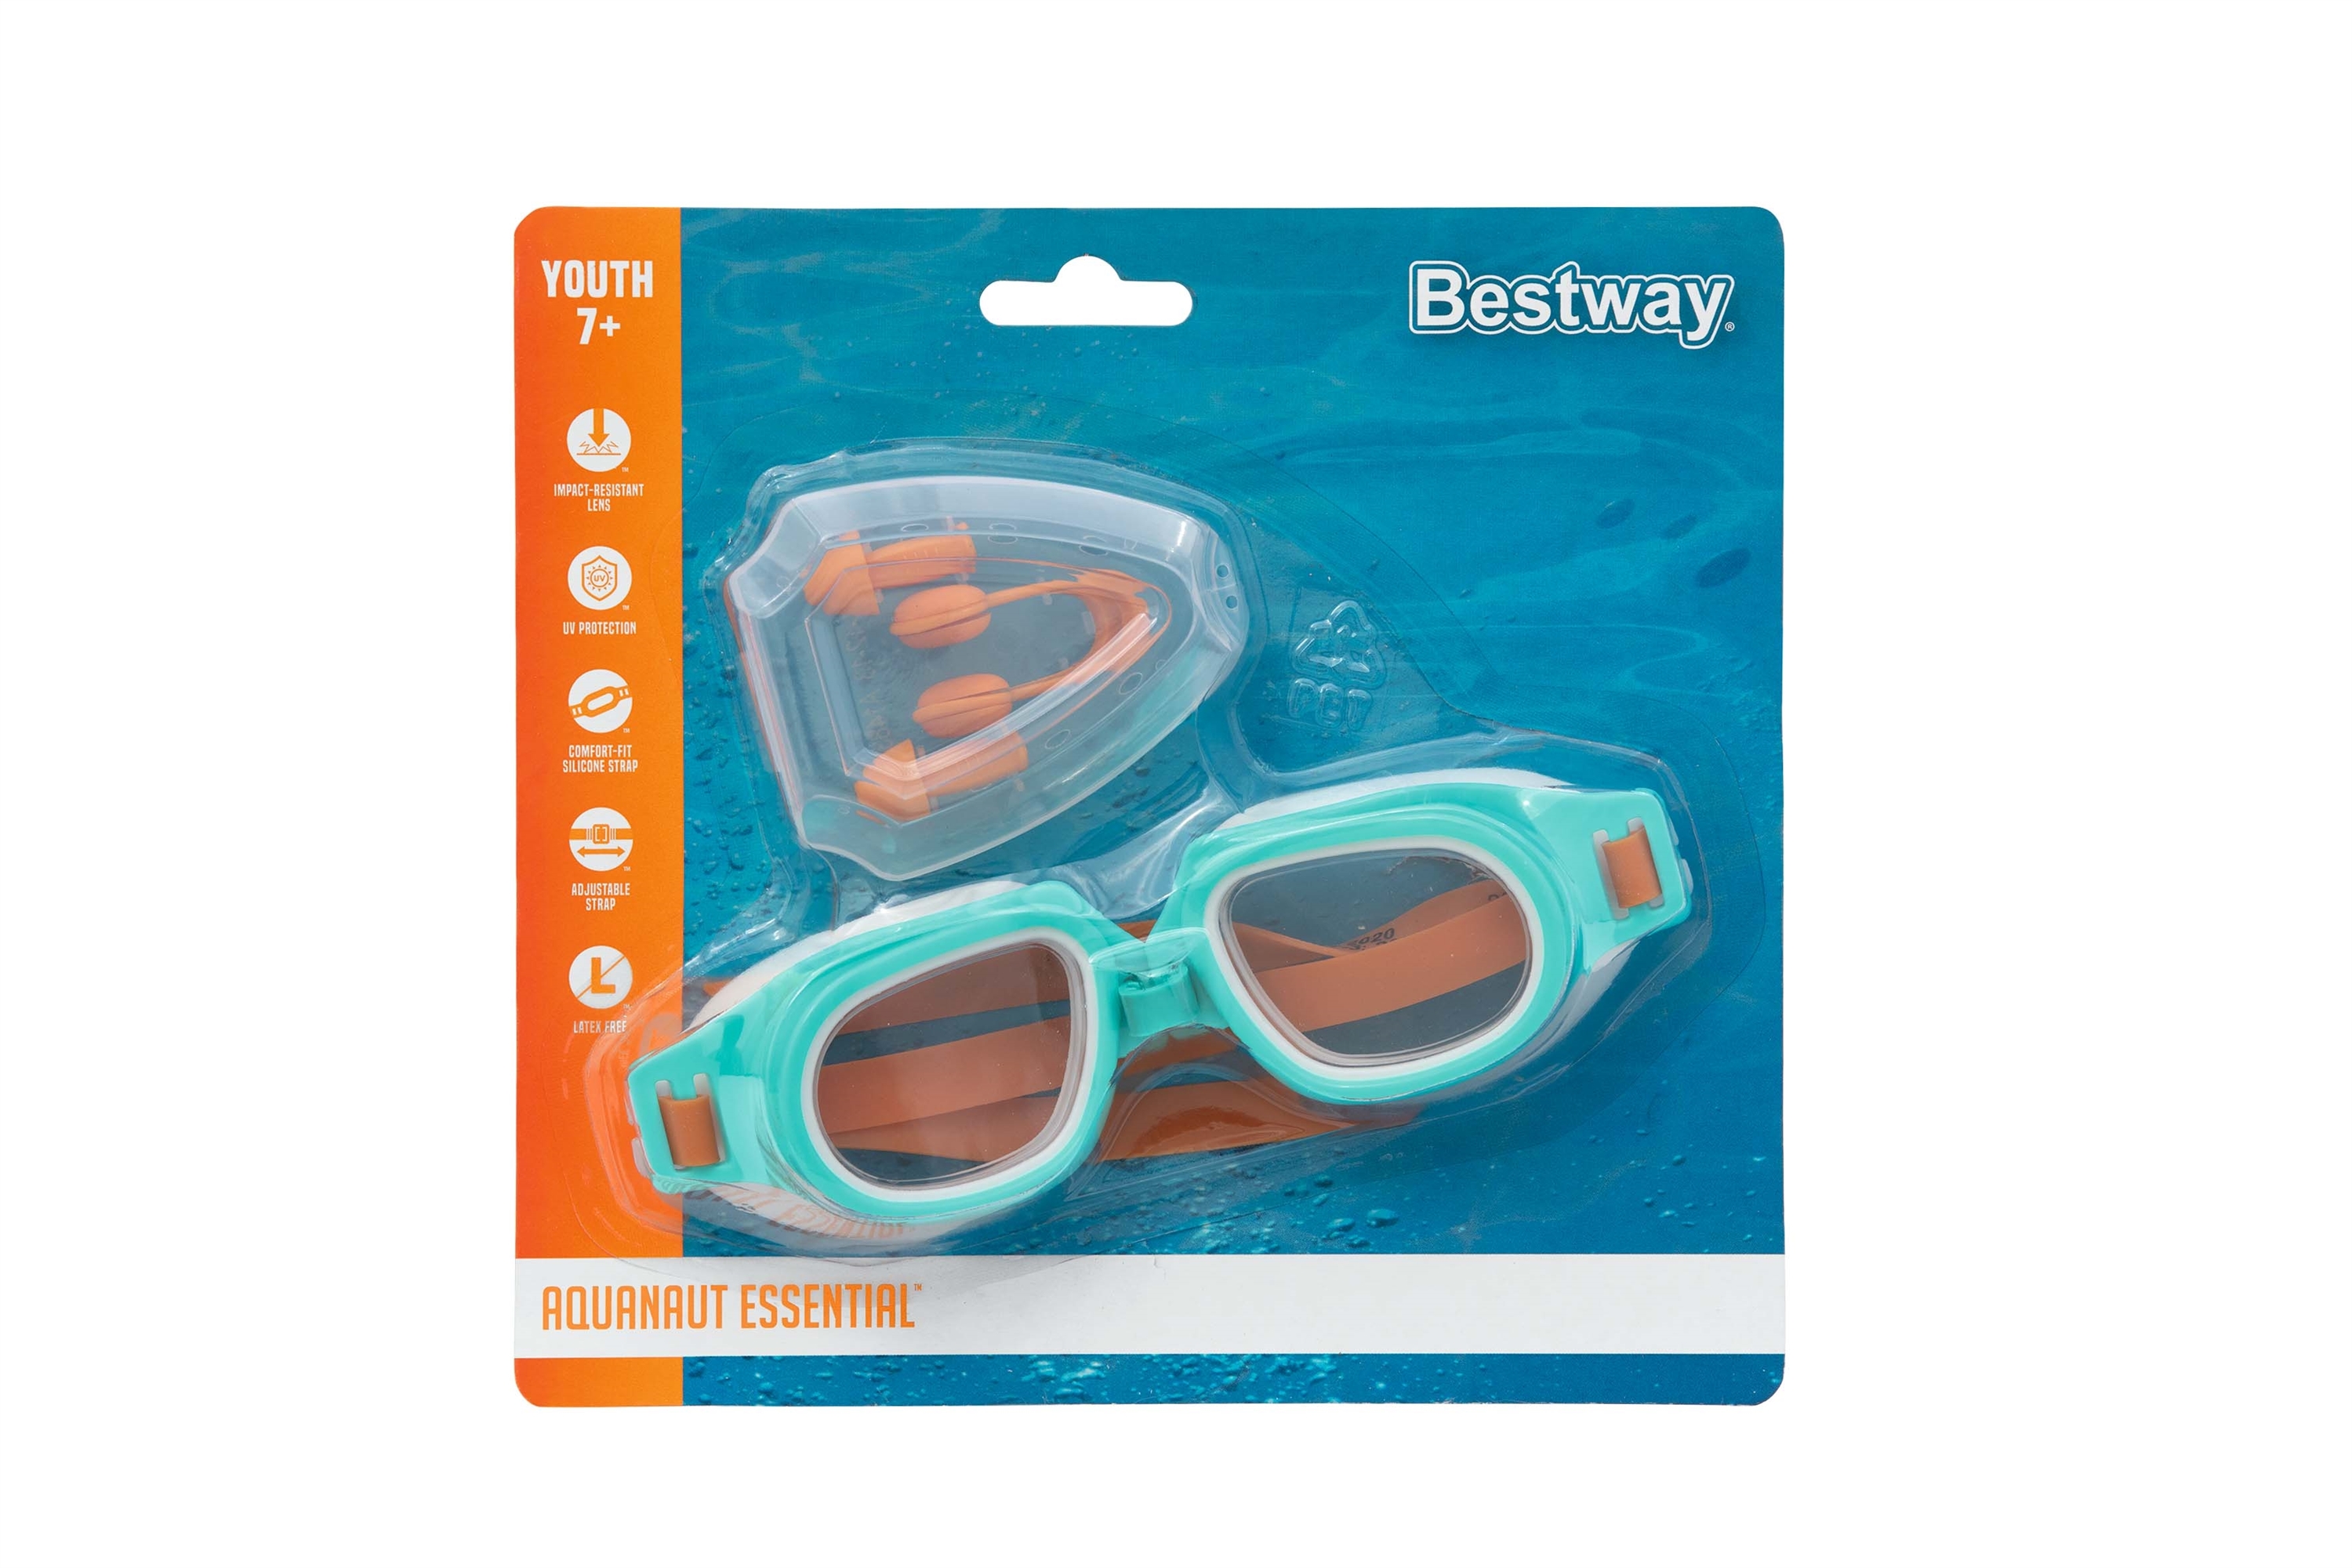 Комплект для плавания (очки, зажим для носа и беруши)